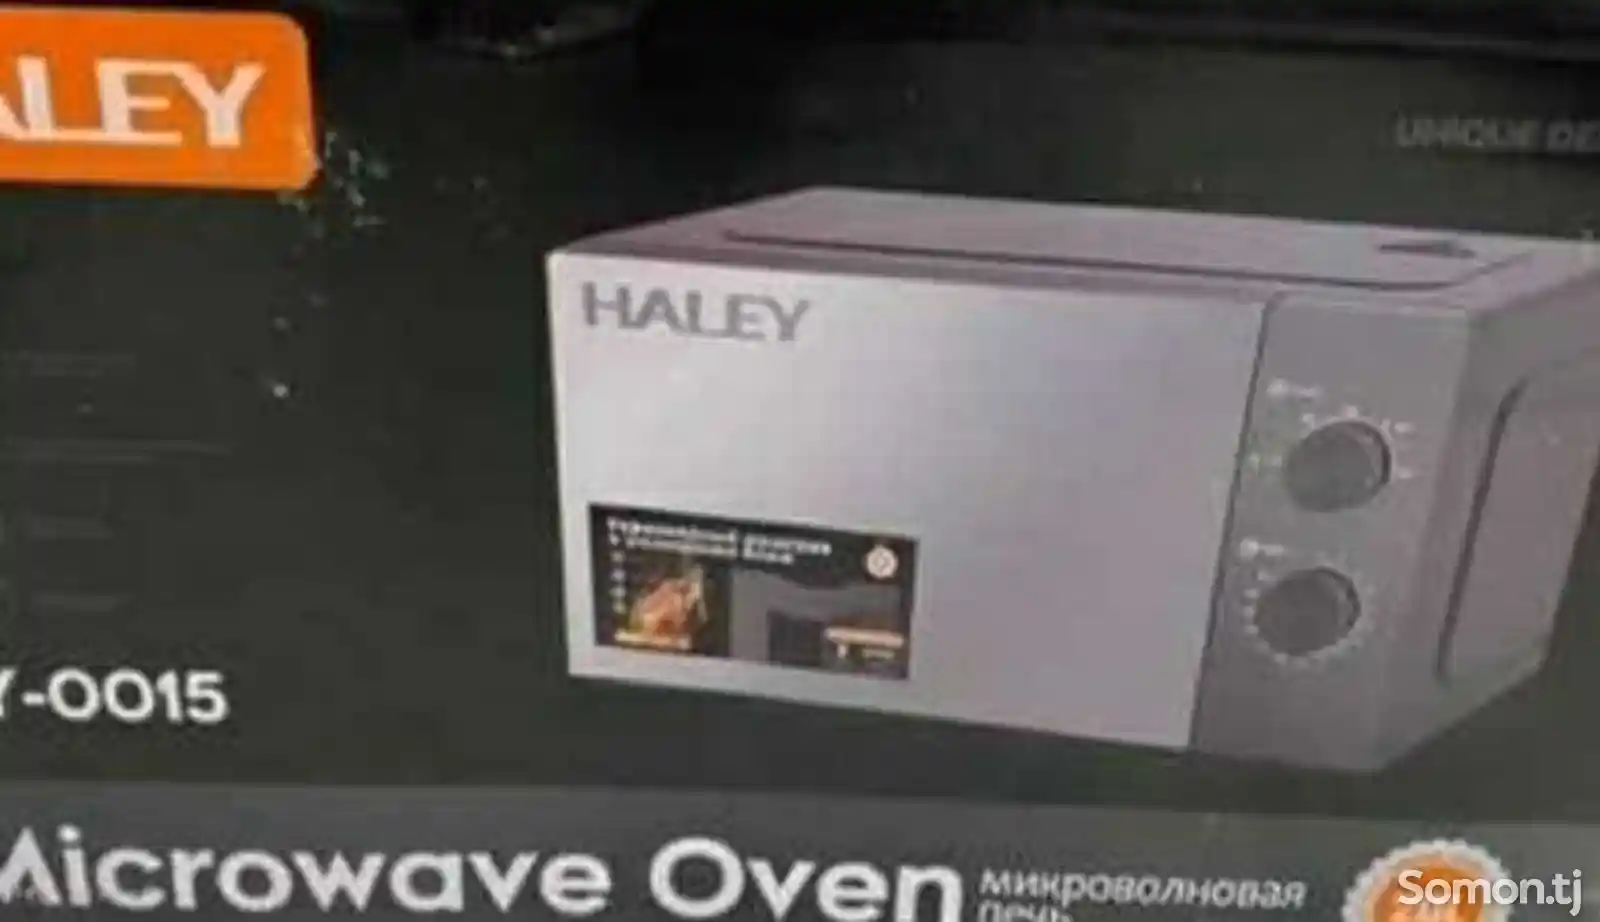 Микроволновая печь Haley-0015